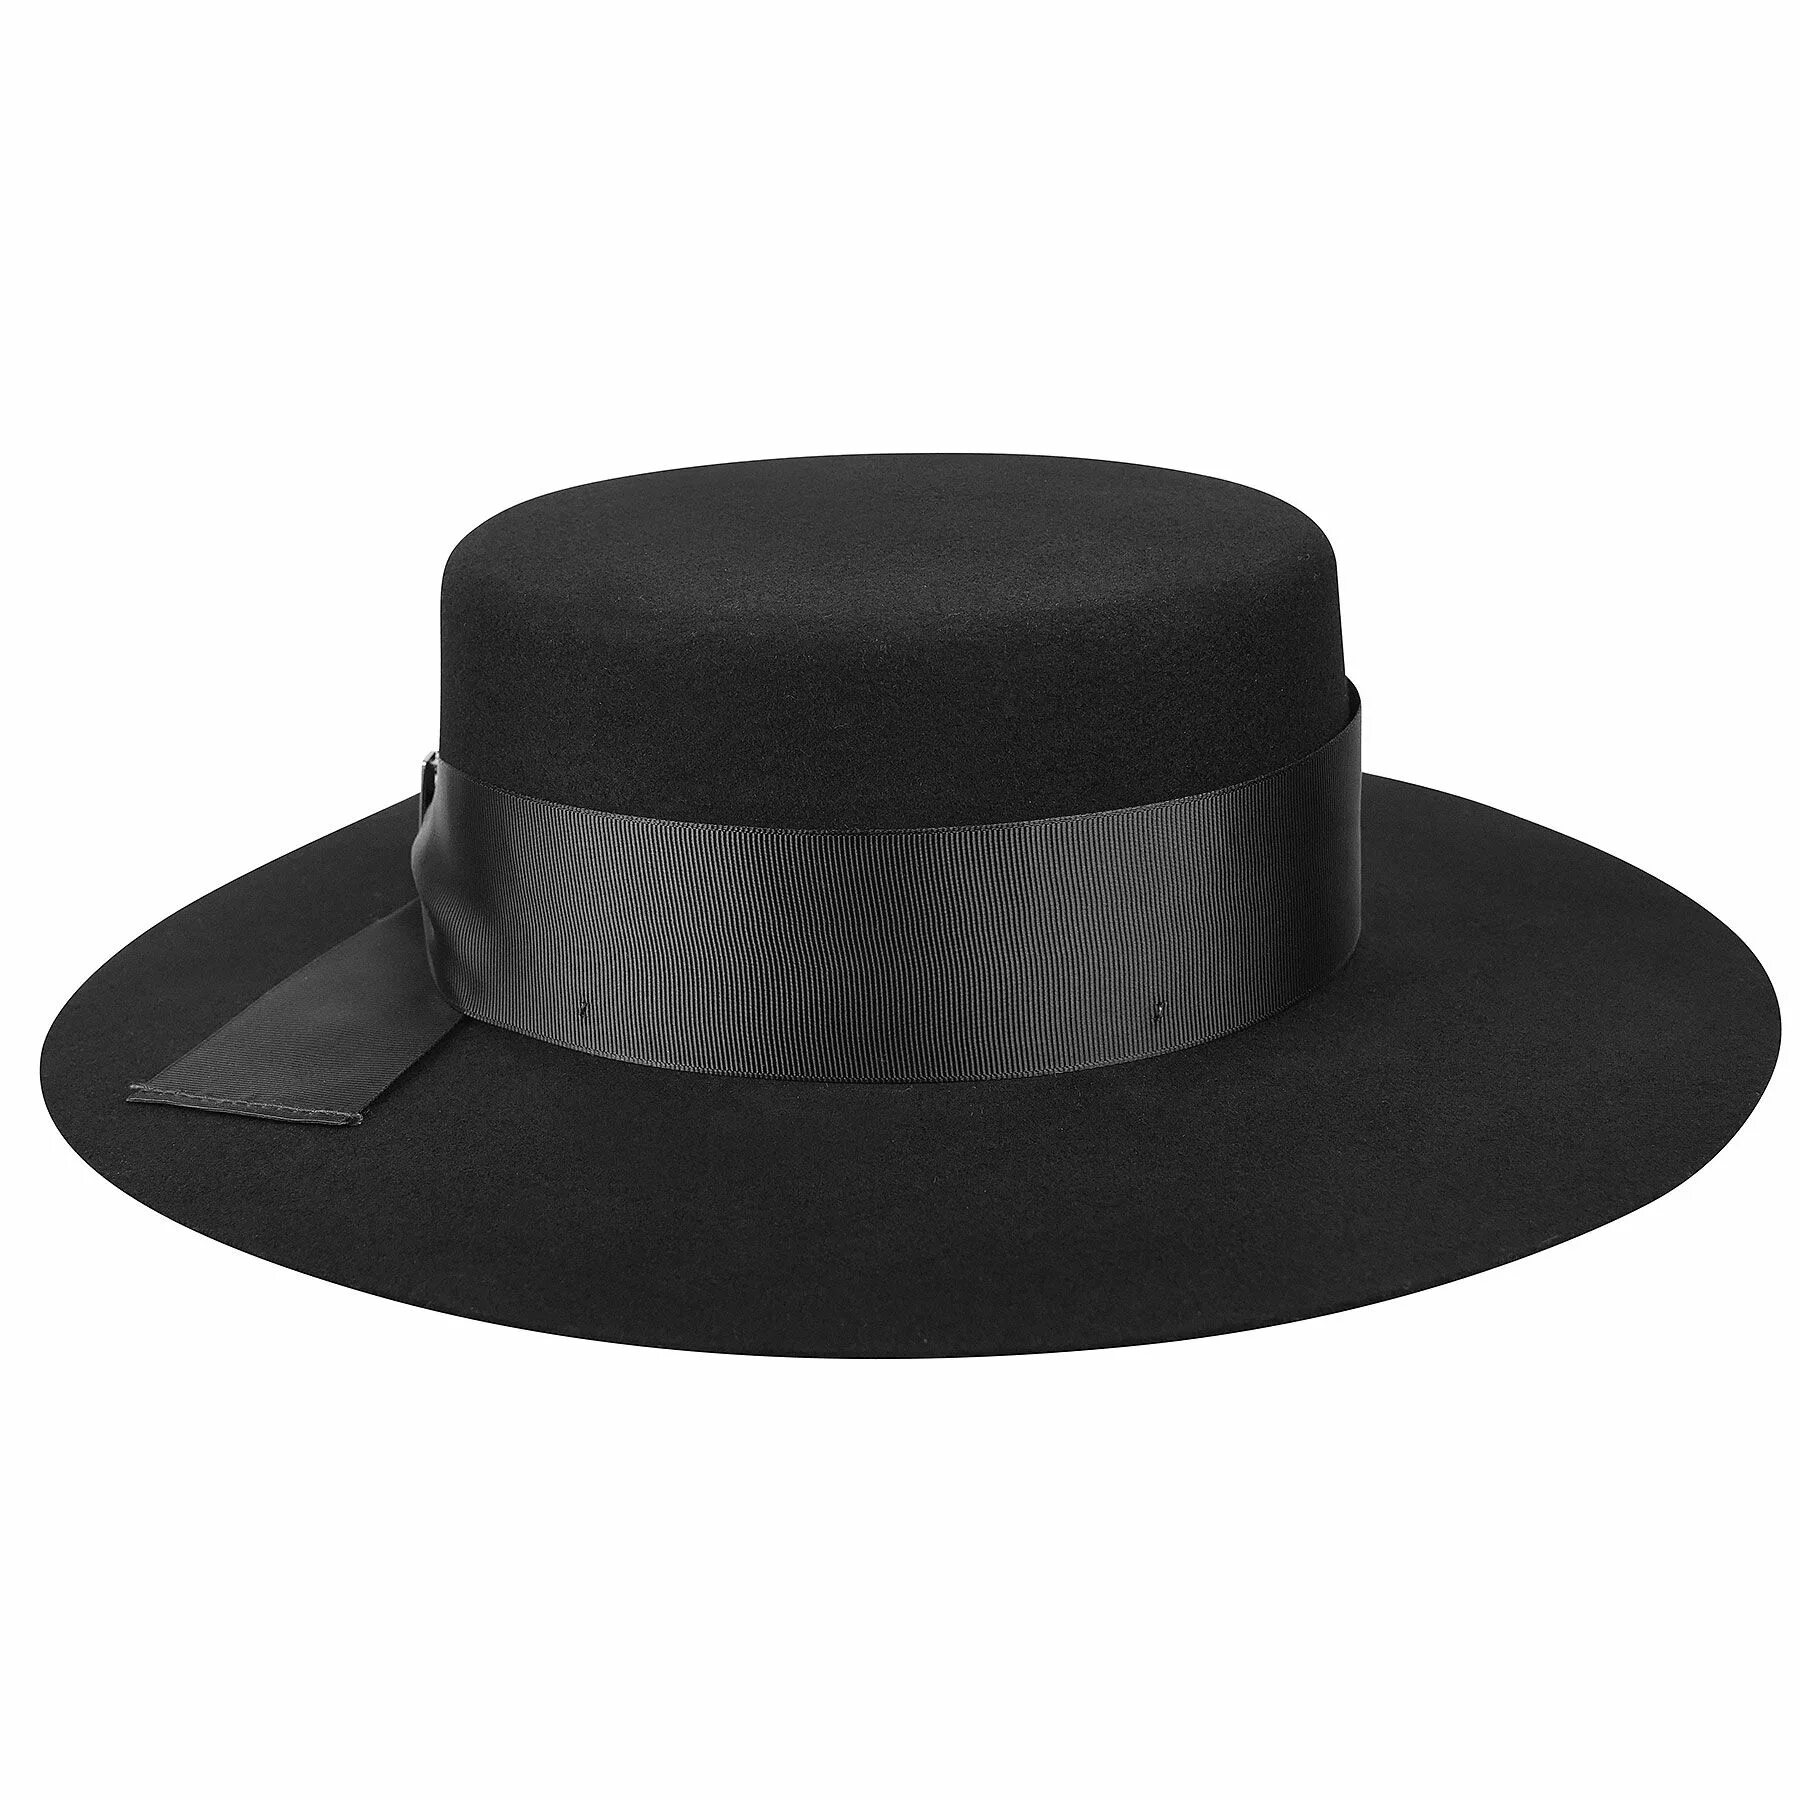 Шляпа Аверилл hats 2 черный 54. Шляпа Boater. Шляпа черная. Круглая шляпа мужская. Большие черные шляпы